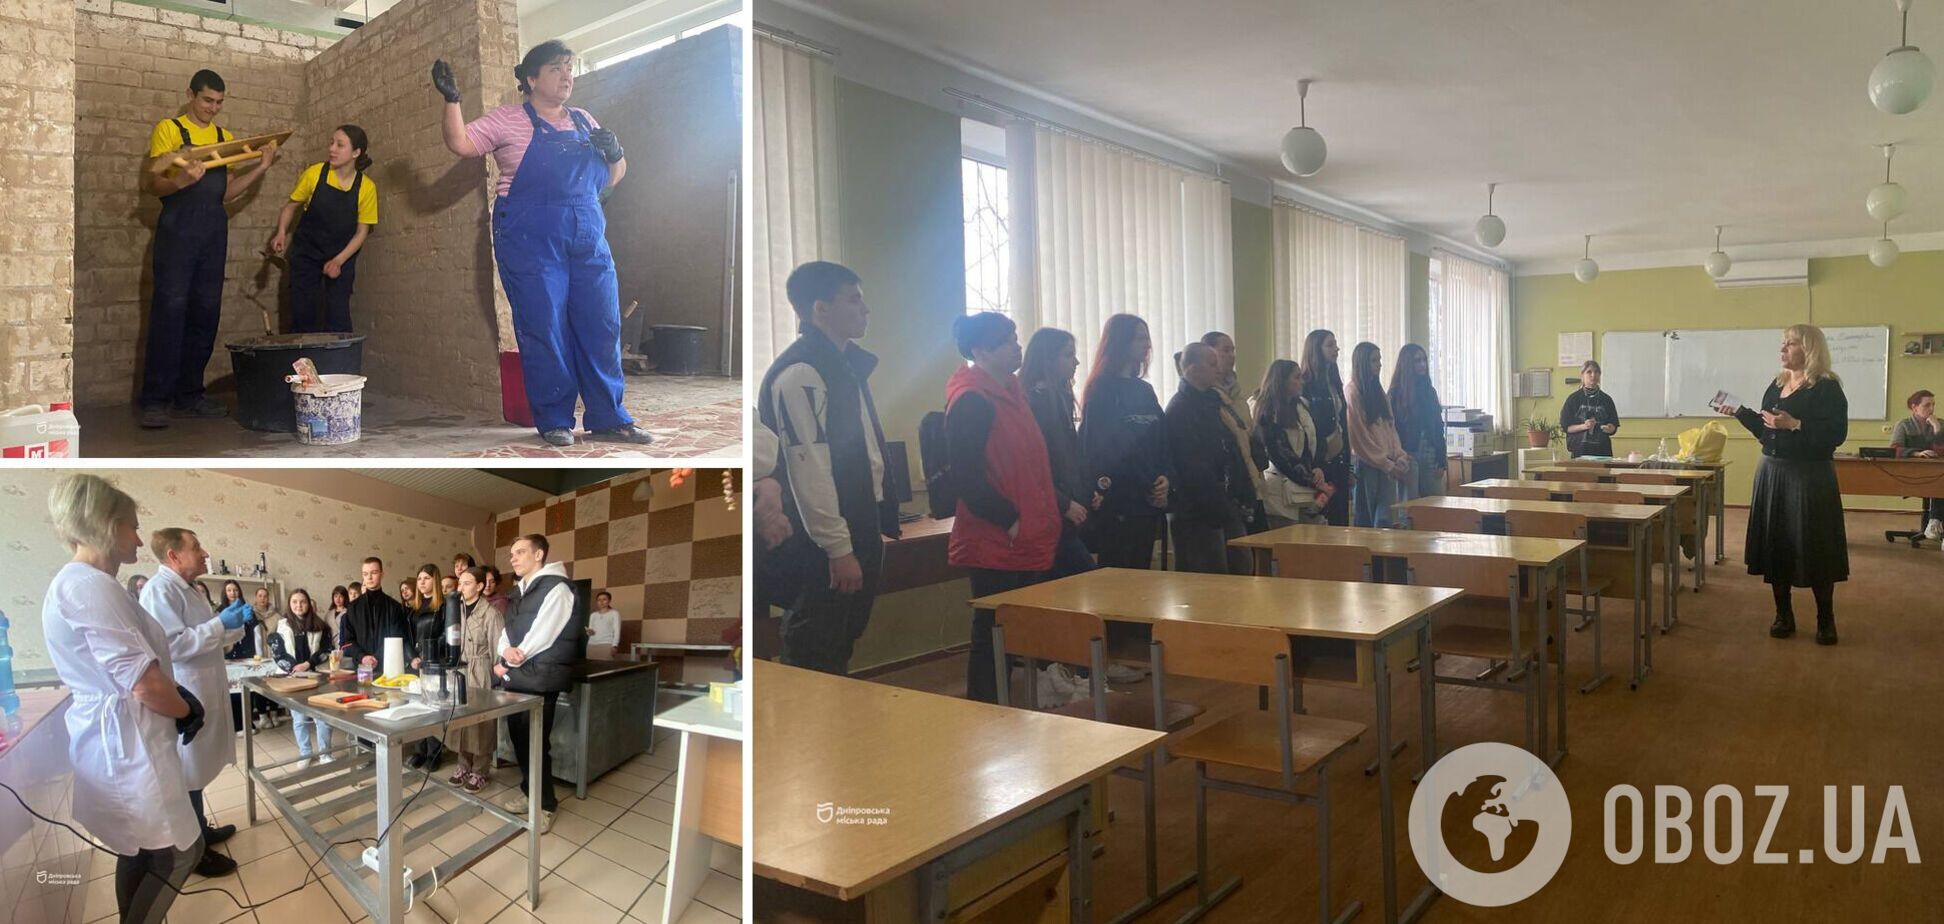 Багато практики та диплом затребуваної професії: у професійно-технічних закладах Дніпра пройшов день відкритих дверей